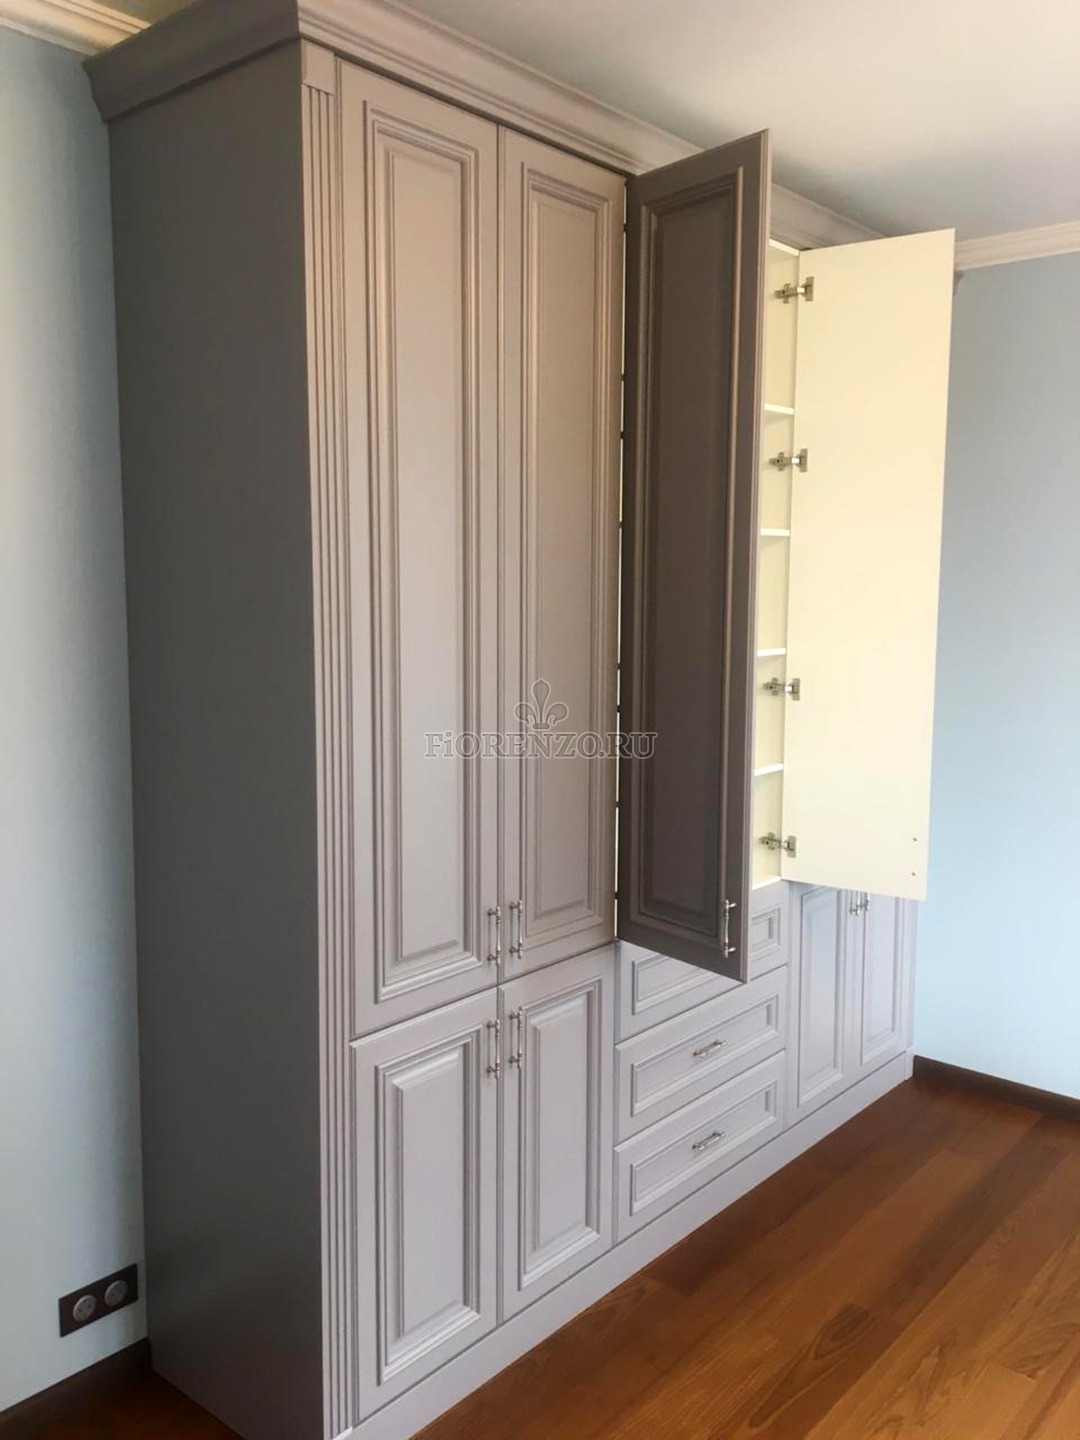 Шкаф с открытыми дверцами